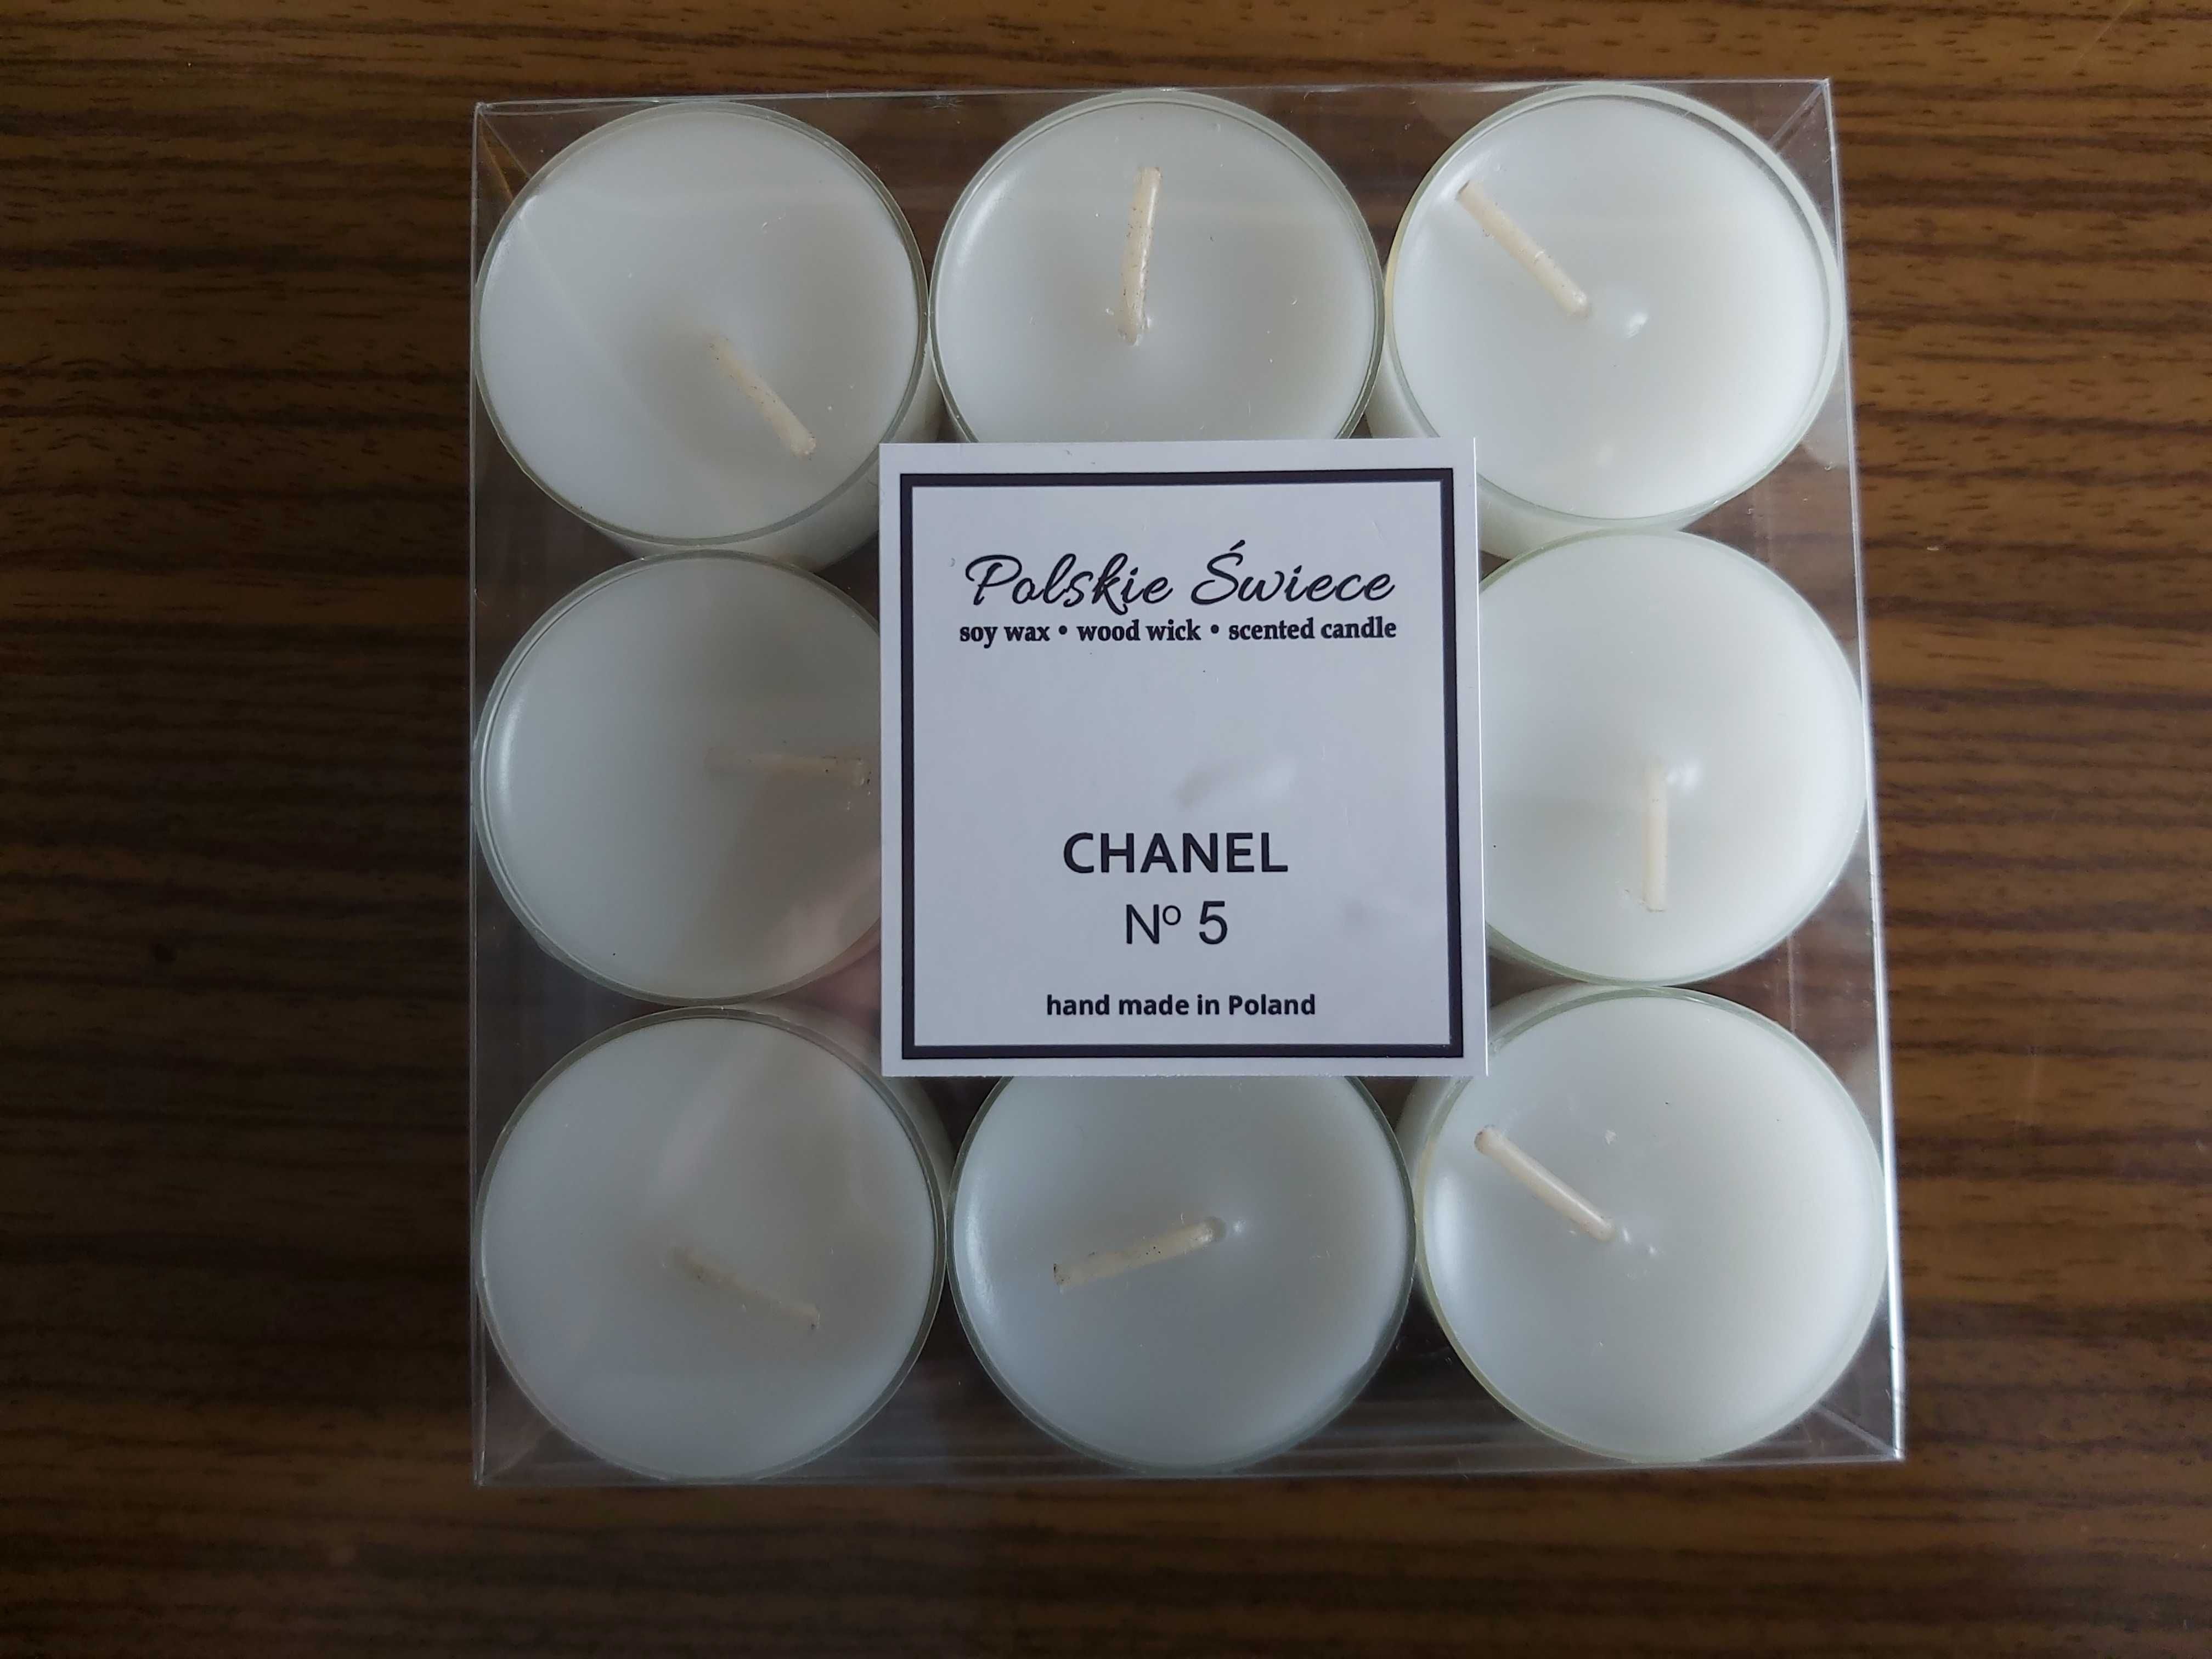 Polskie świece Chanel 5 podgrzewacz świeca zapachowa 9 szt NOWE z 30zł